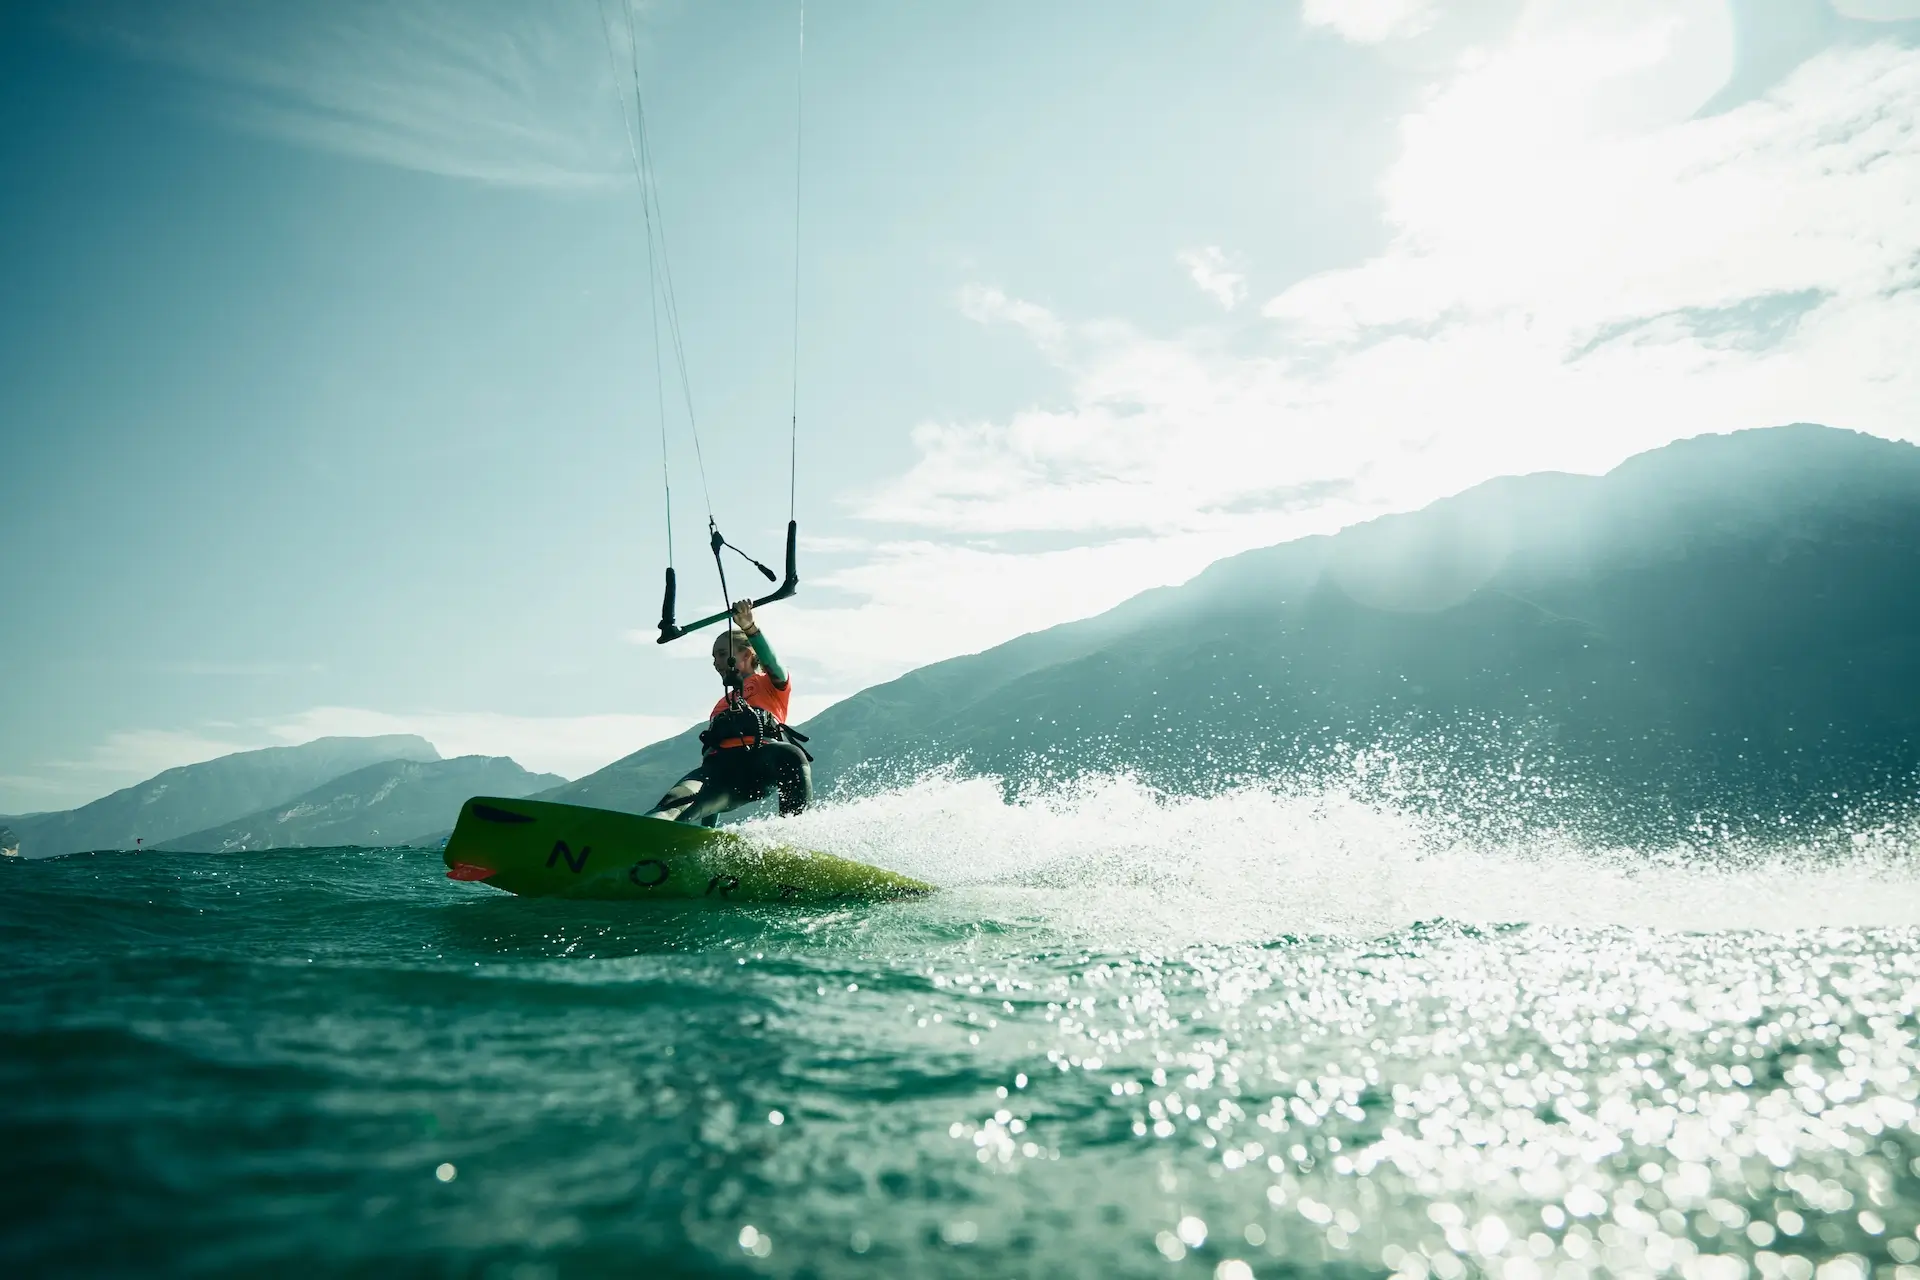 blonde Kitesurfer with yellow board plaining at Lake Garda